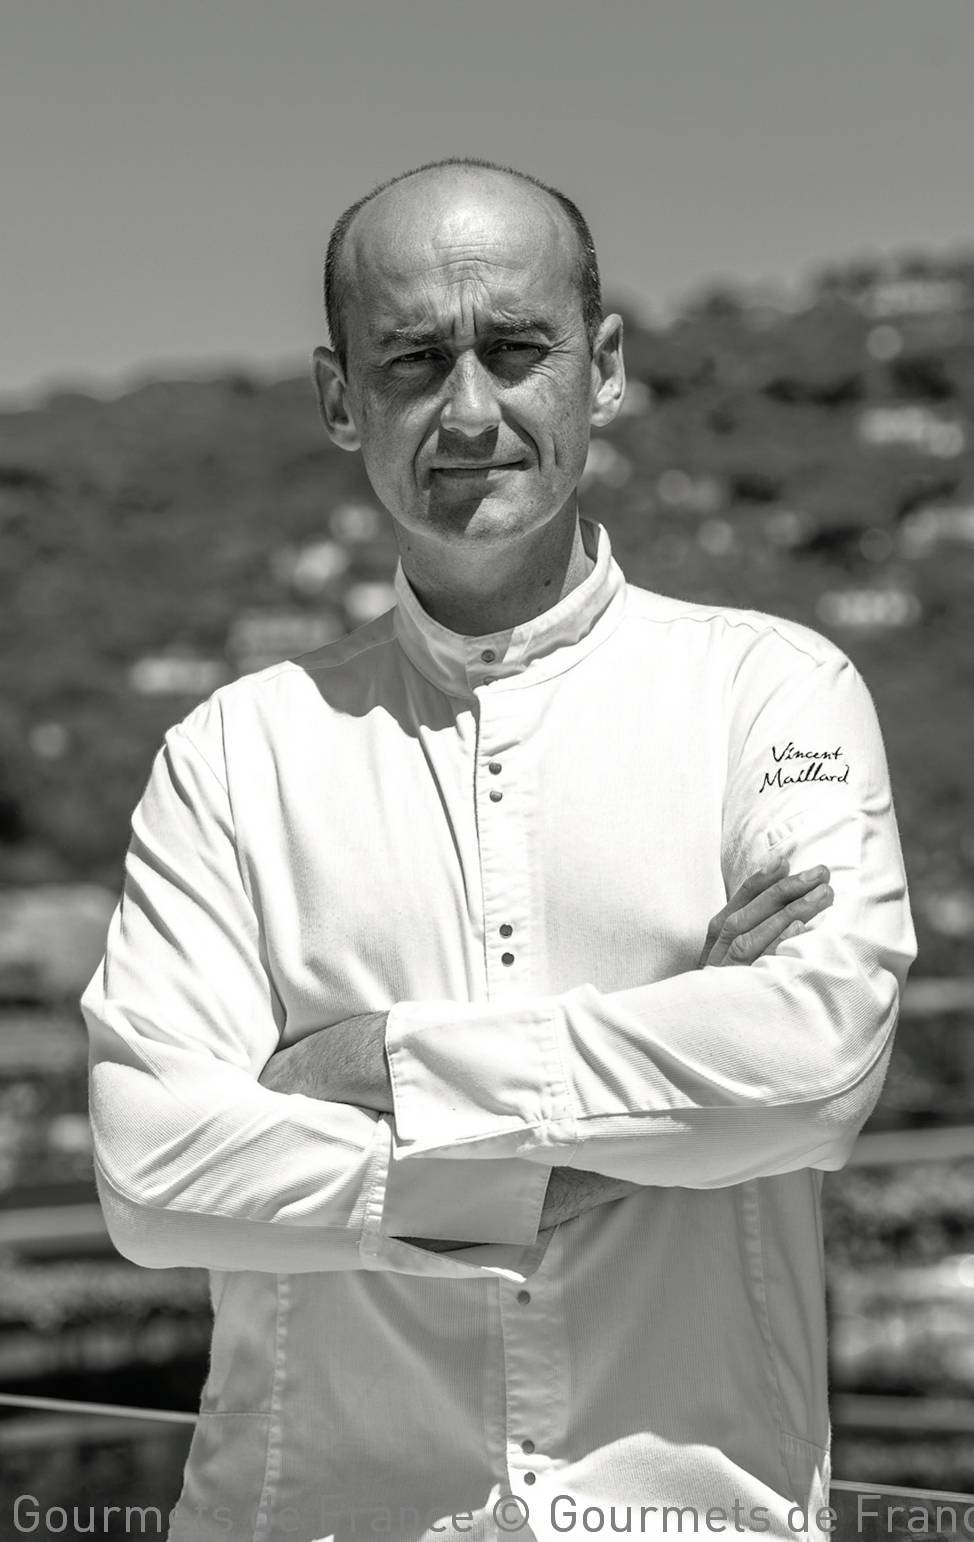 Chef Vincent Maillard